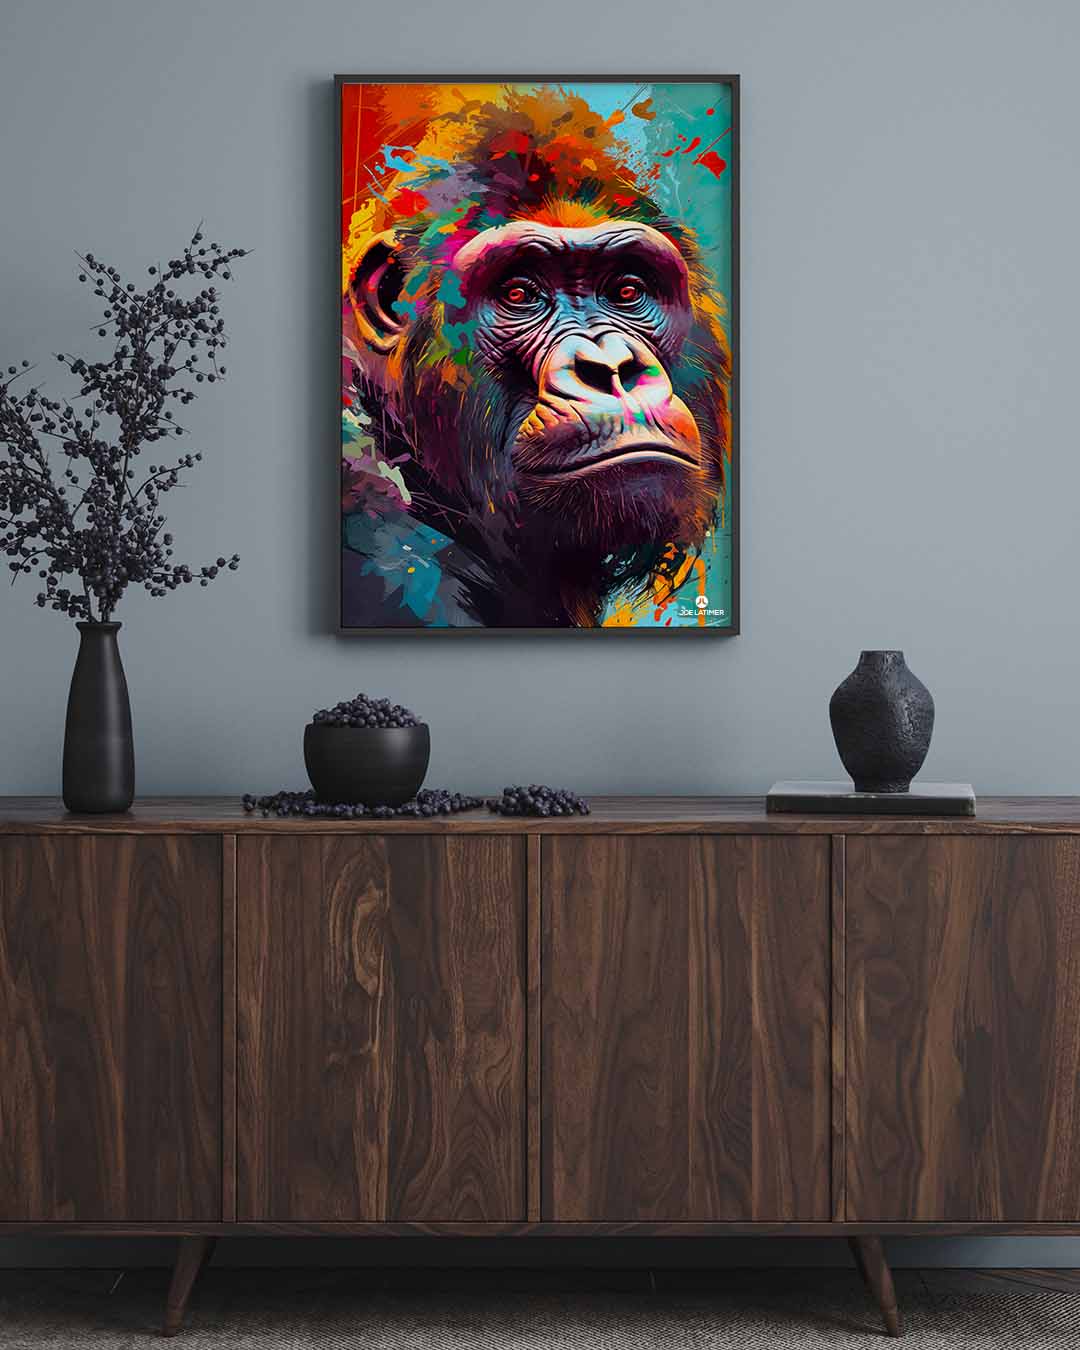 Gorilla Poster - Joe FL Park, Artist Creative Media Latimer | Digital A Winter 